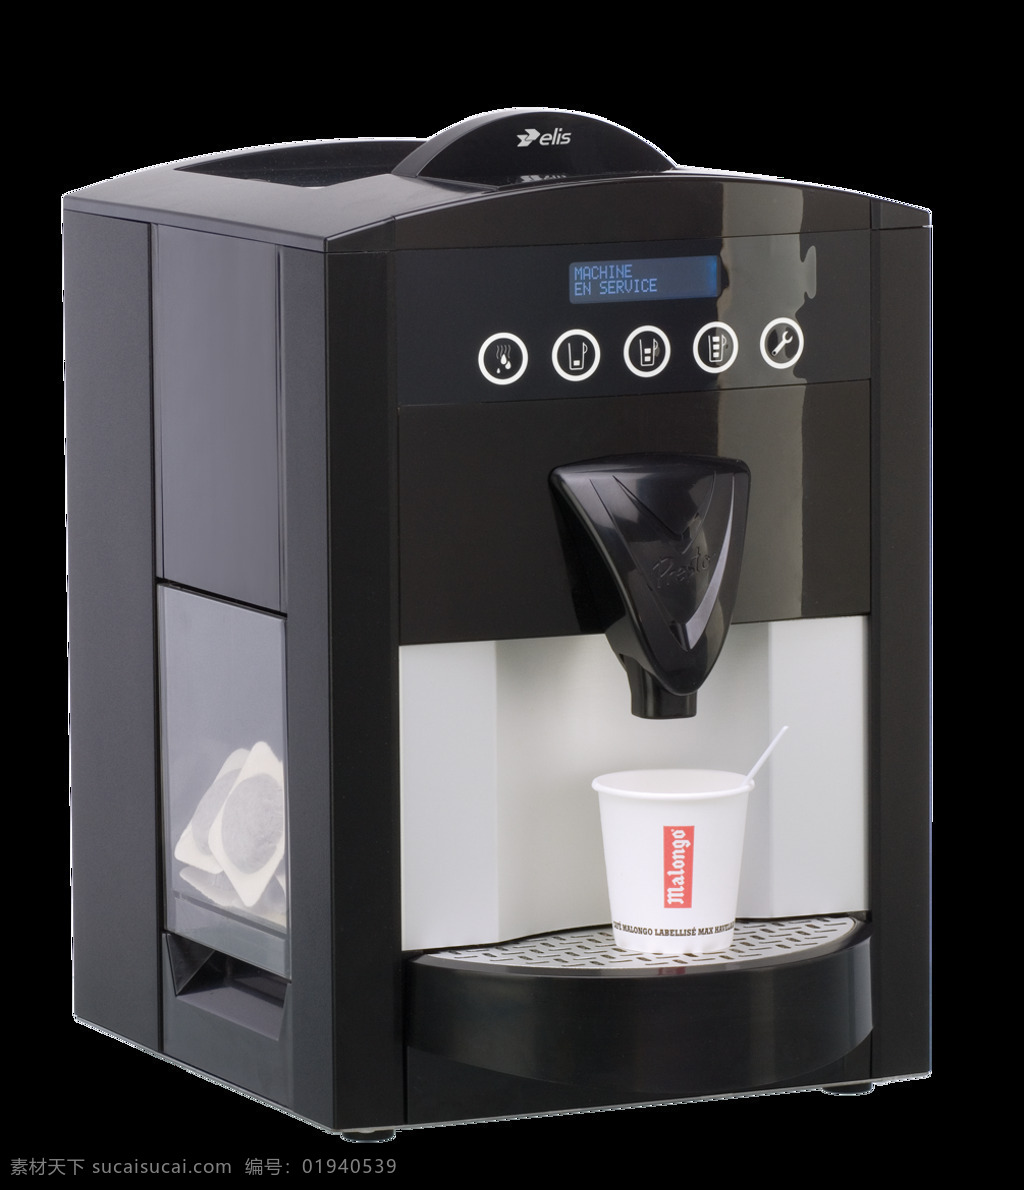 飞利浦 咖啡机 免 抠 透明 图 层 t3咖啡机 煮咖啡机 手工咖啡机 飞利浦咖啡机 胶囊式咖啡机 咖啡机素材 欧式咖啡机 自动 贩卖 咖啡机图片 家用咖啡机